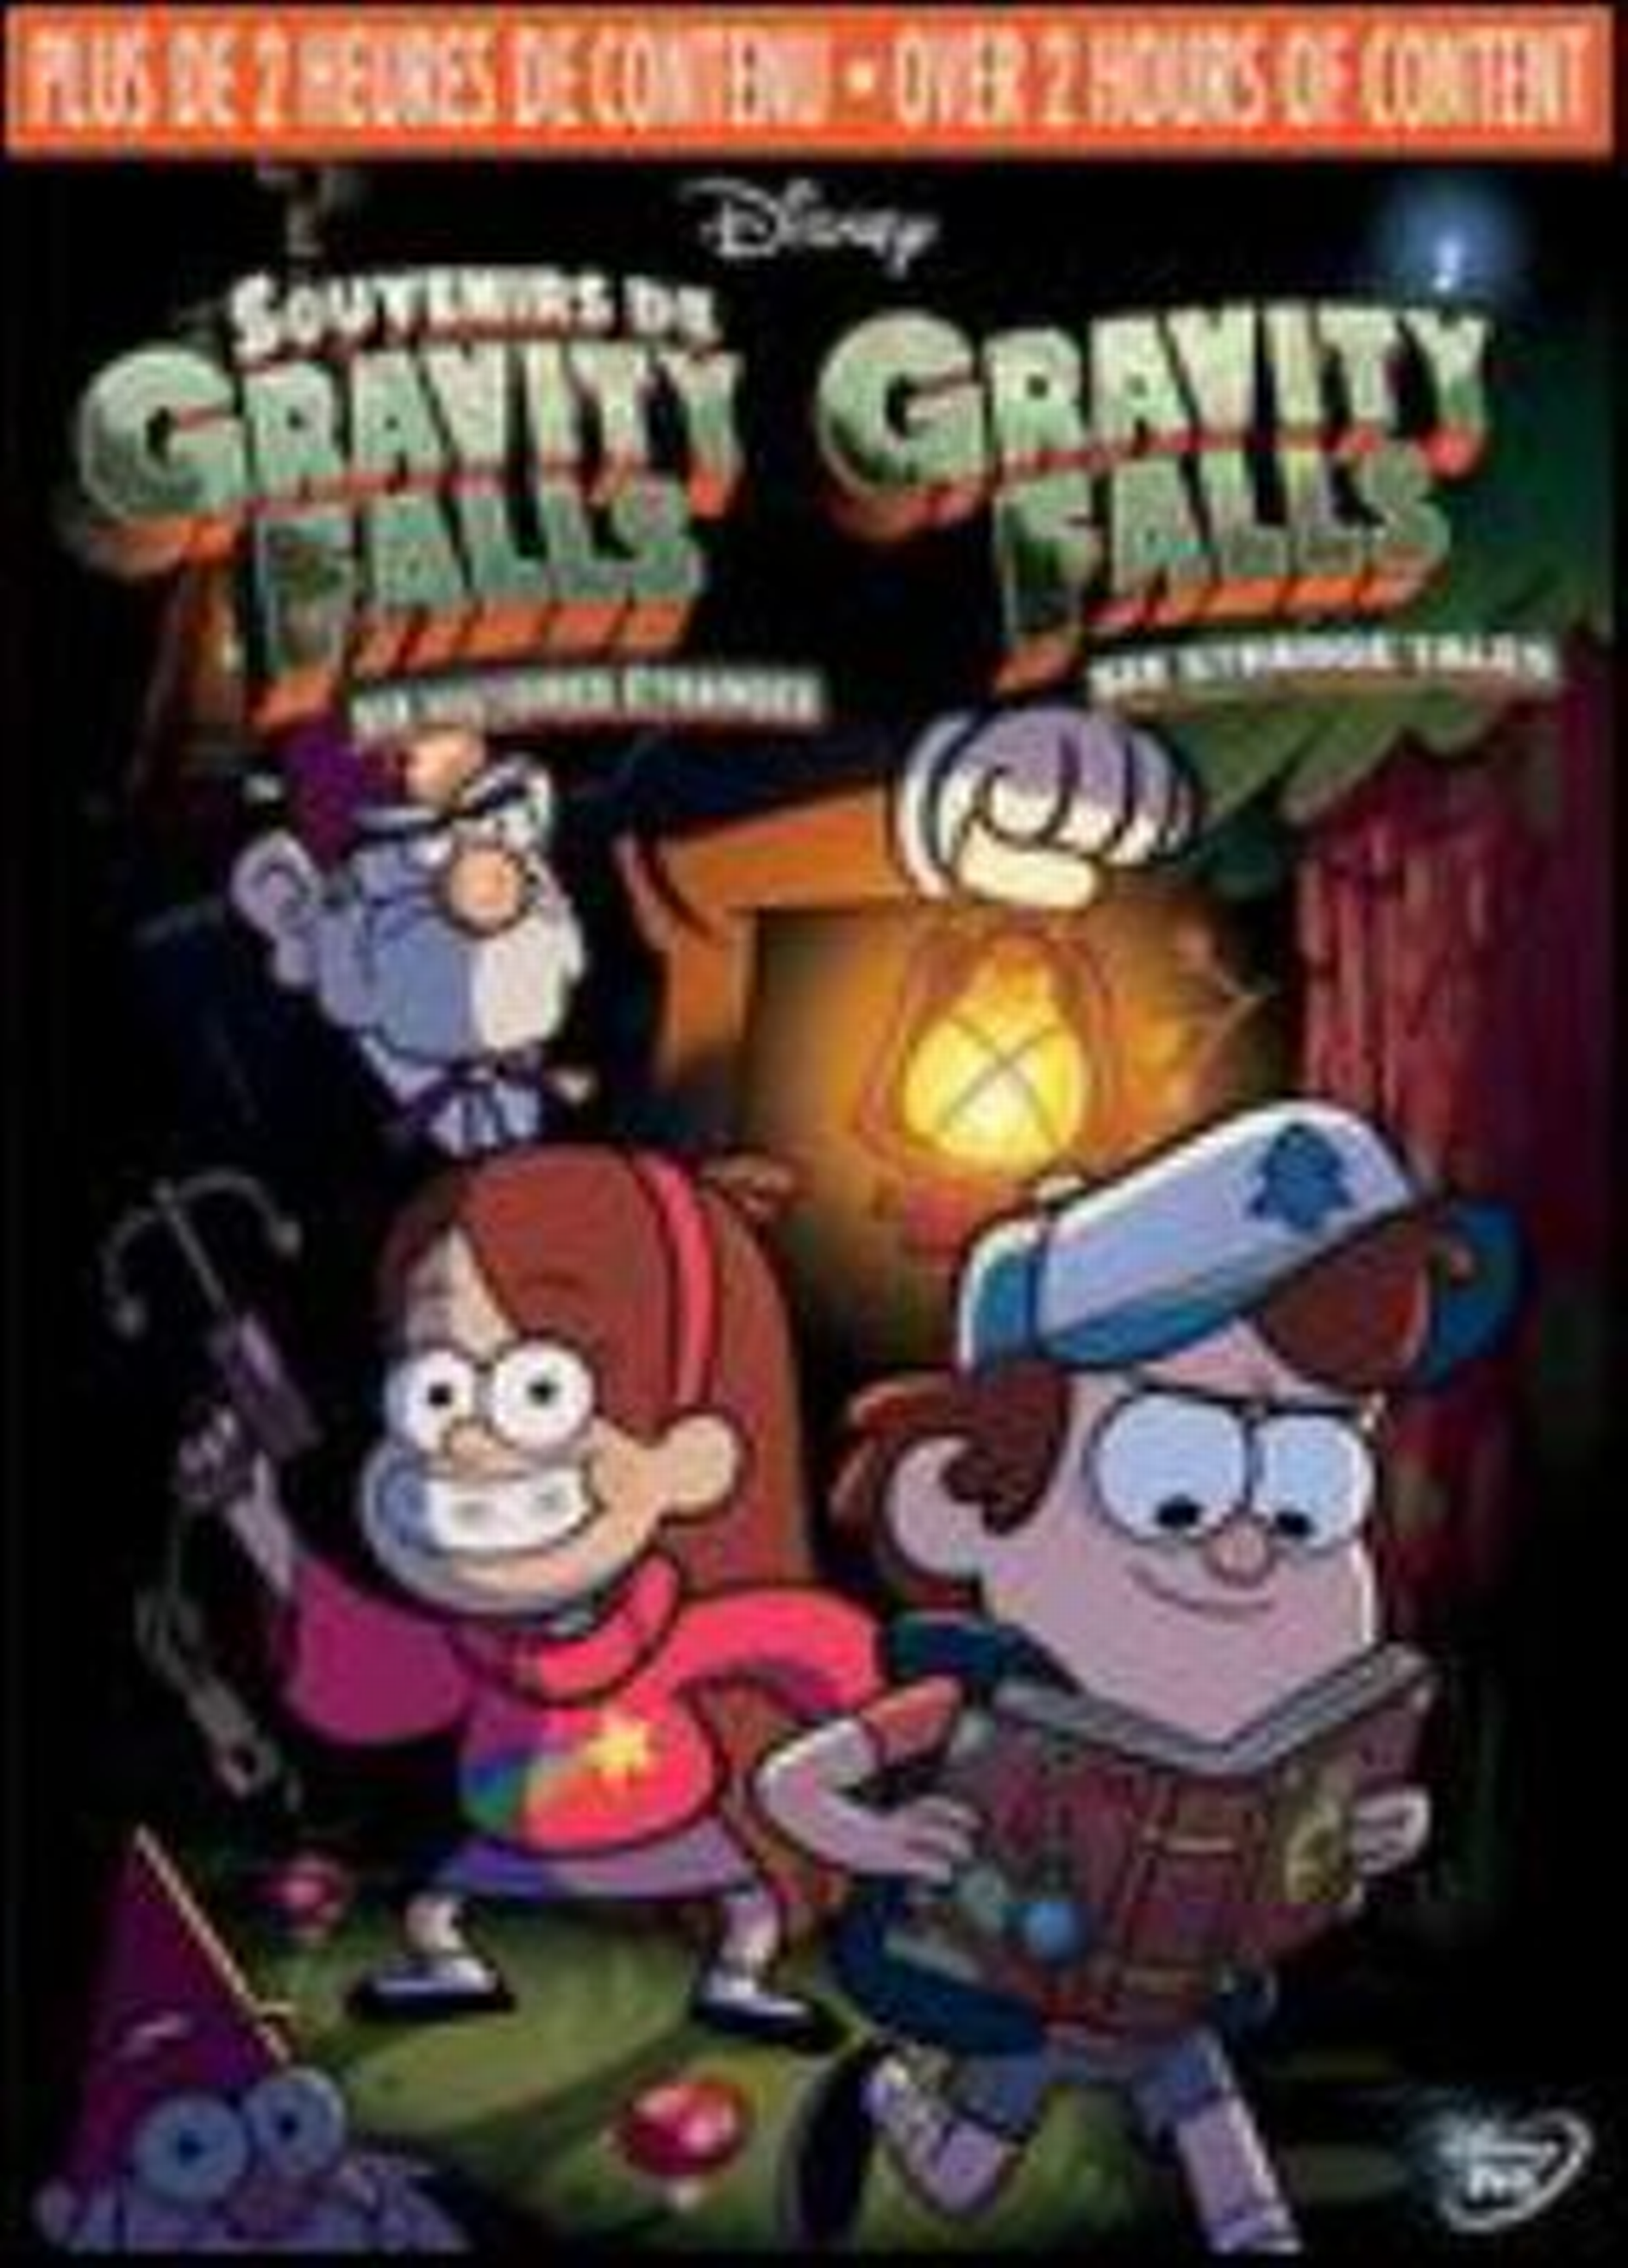 Souvenirs de Gravity Falls : six histoires étranges